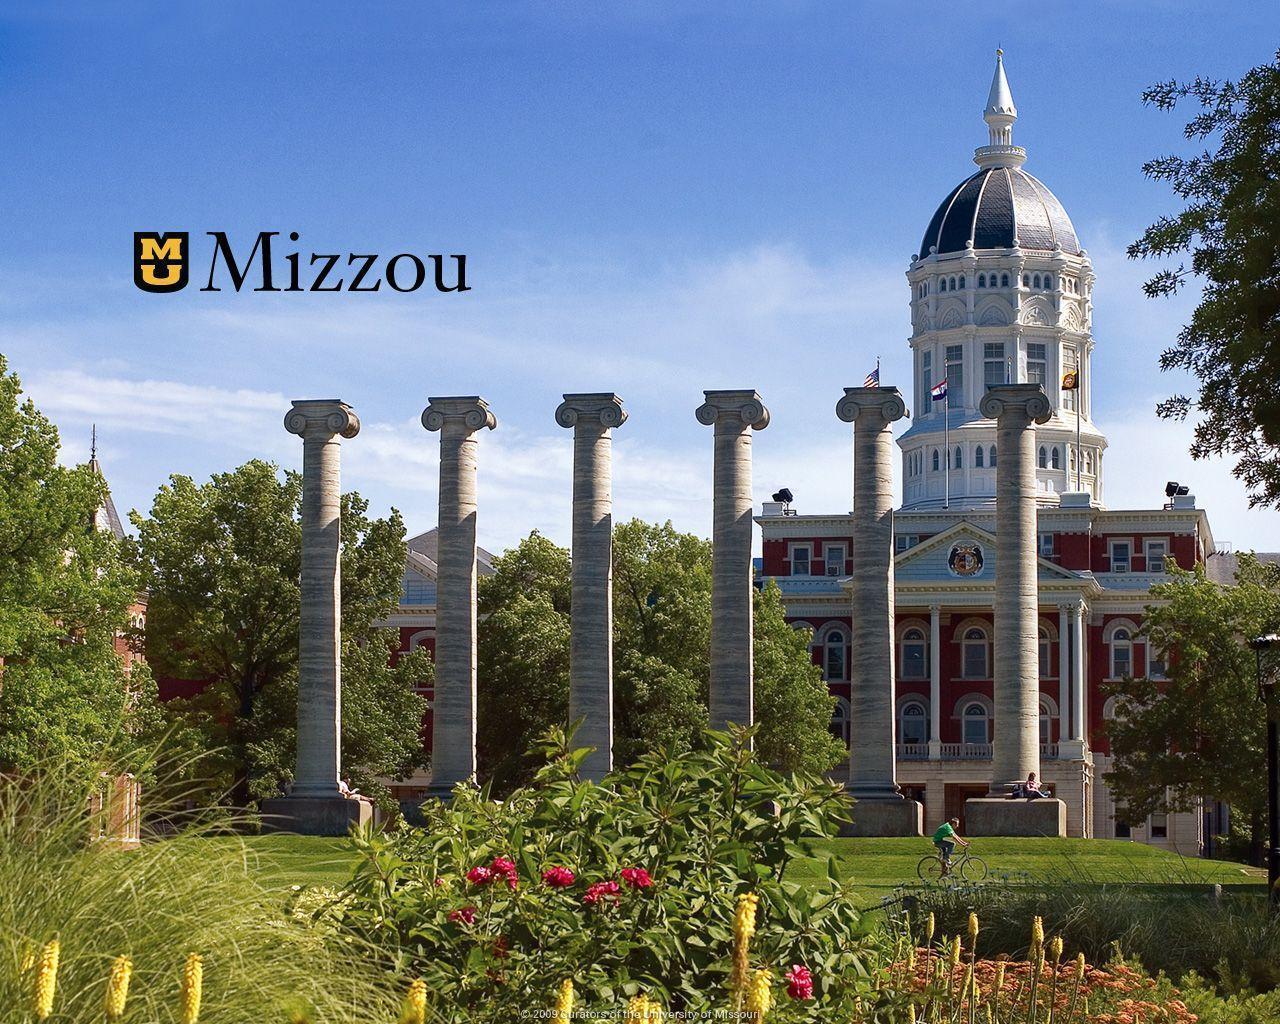 Mizzou Spirit // Mizzou // University of Missouri